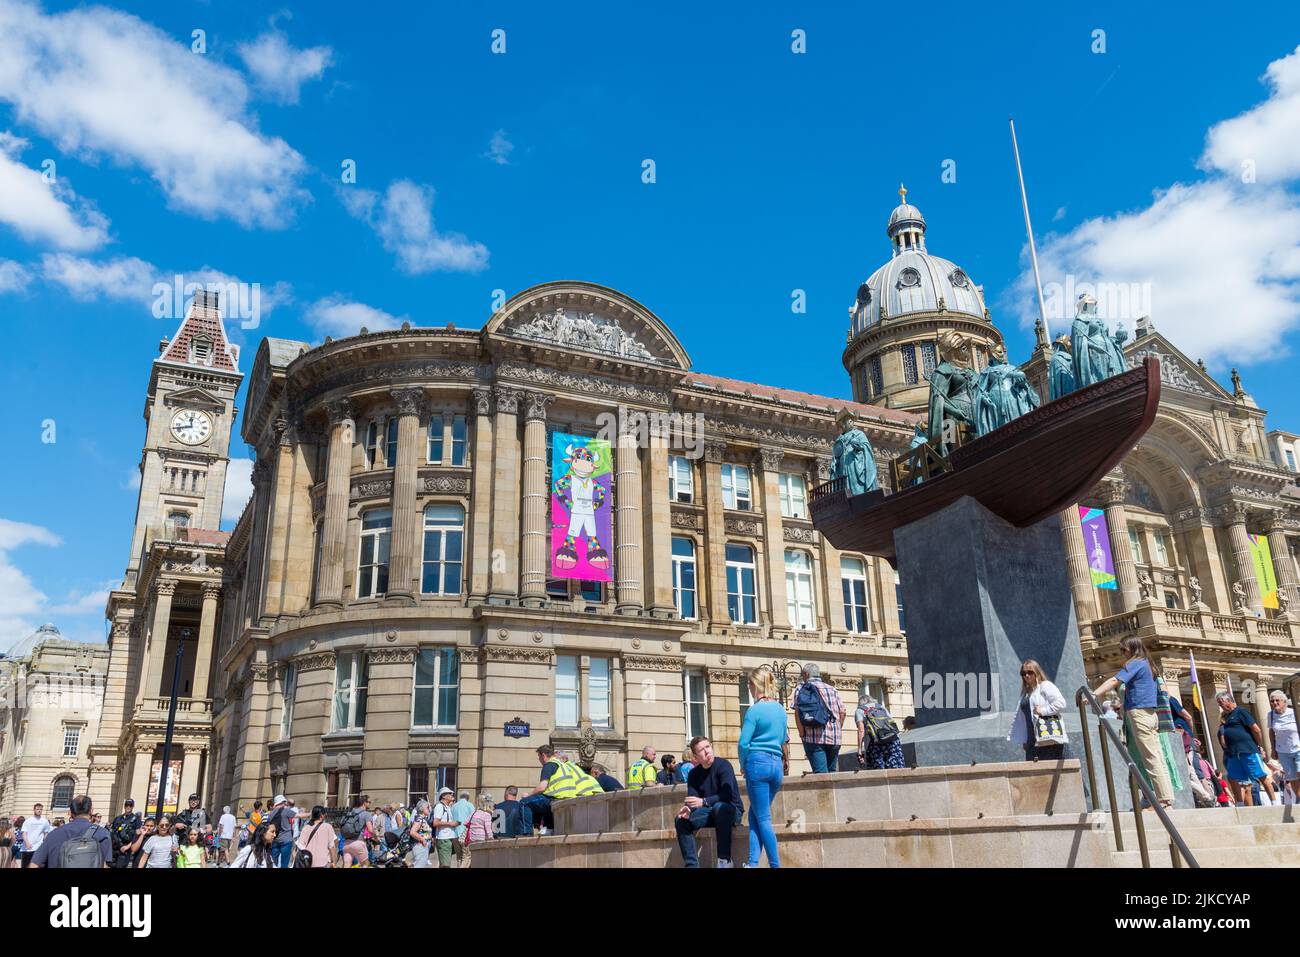 Une œuvre temporaire appelée Foreign Exchange par l'artiste Hew Locke remplace la statue de la reine Victoria sur la place Victoria, à Birmingham Banque D'Images